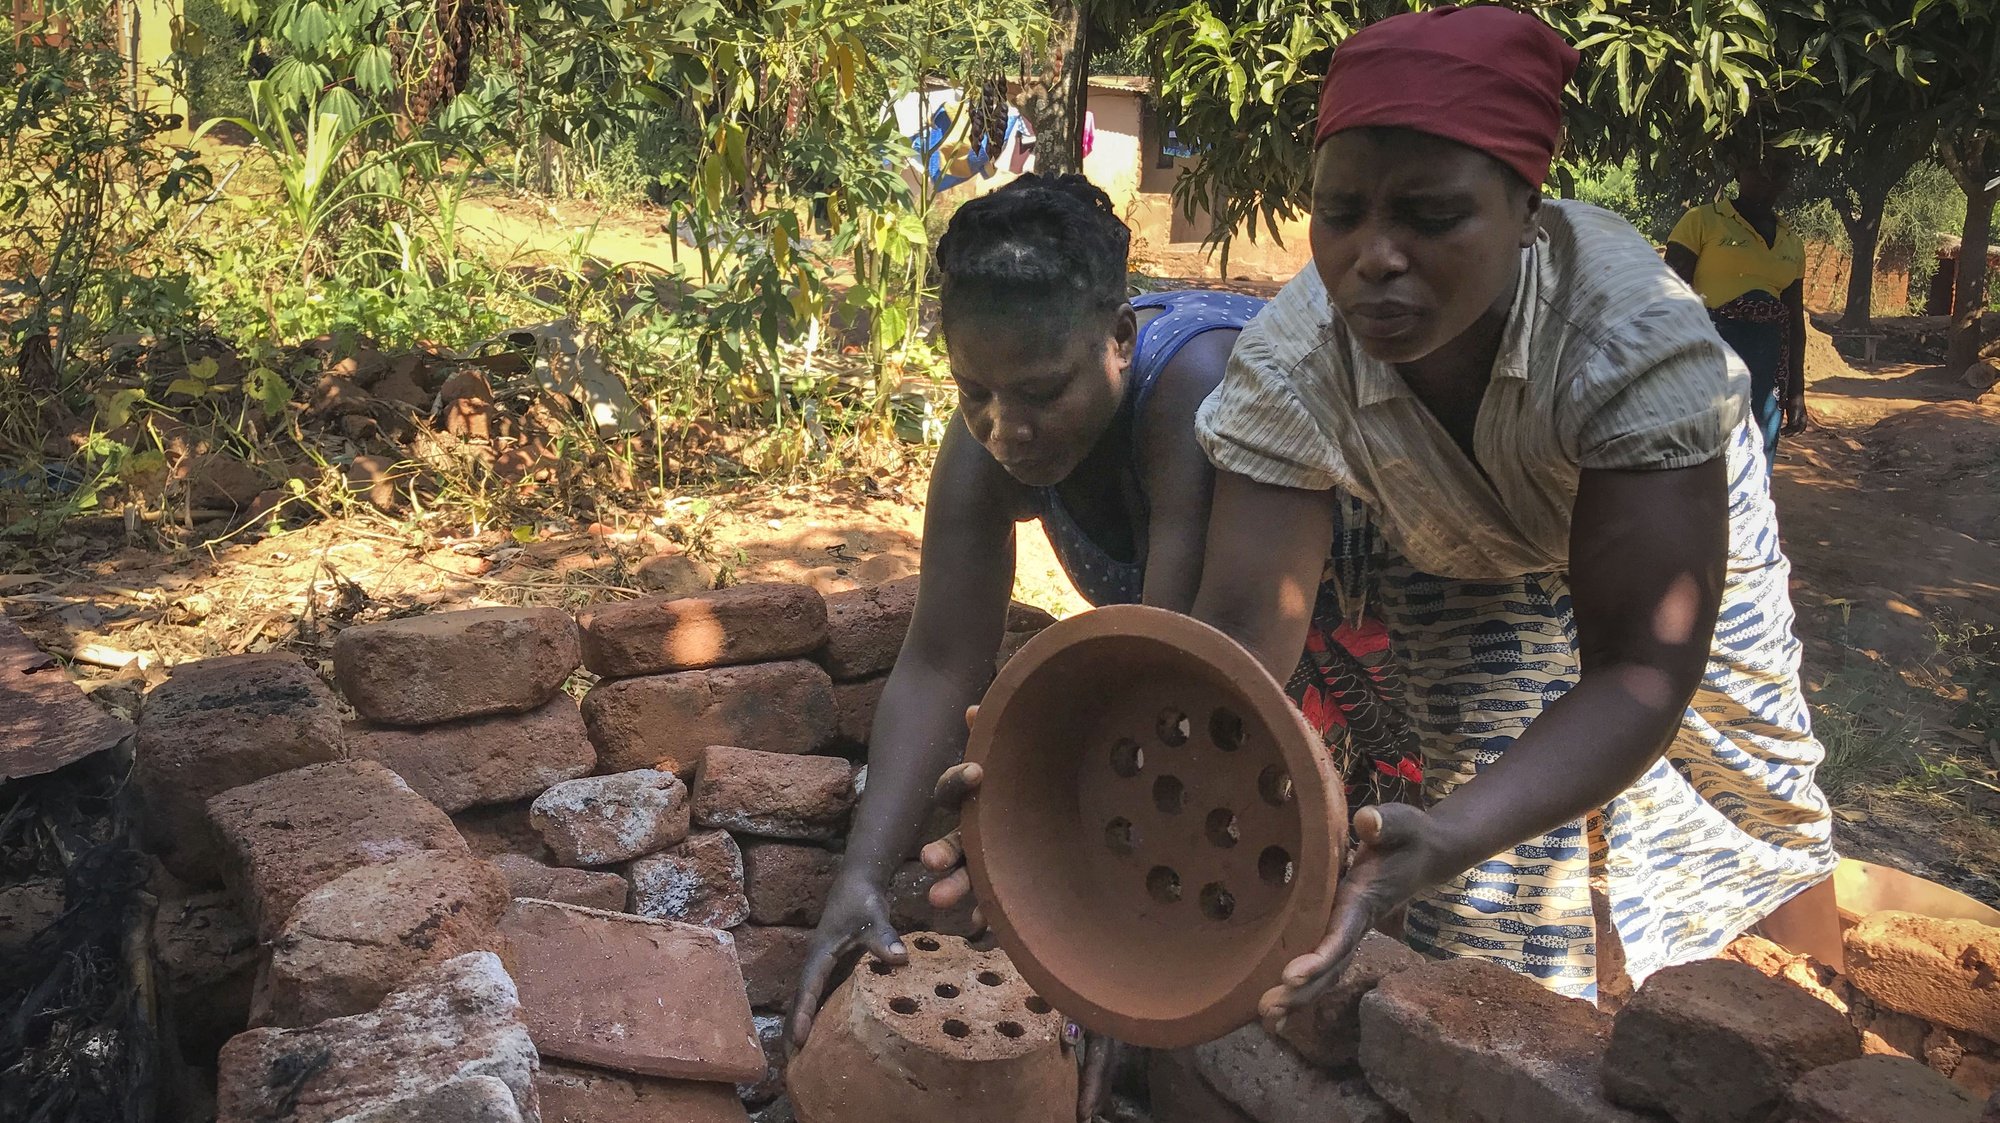 Mulheres produzem fogareiros de barro, também chamados de fogões ‘poupa-lenha’, Chimoio, Moçambique, 28 de maio de 2021. Centenas de famílias em Chimoio fabricam e usam fogões ‘poupa-lenha’, concebidos para poupar 80% do combustível consumido a fogo aberto, reduzindo a pressão sobre as florestas. (ACOMPANHA TEXTO DE 30/05/2021) ANDRÉ CATUEIRA/LUSA